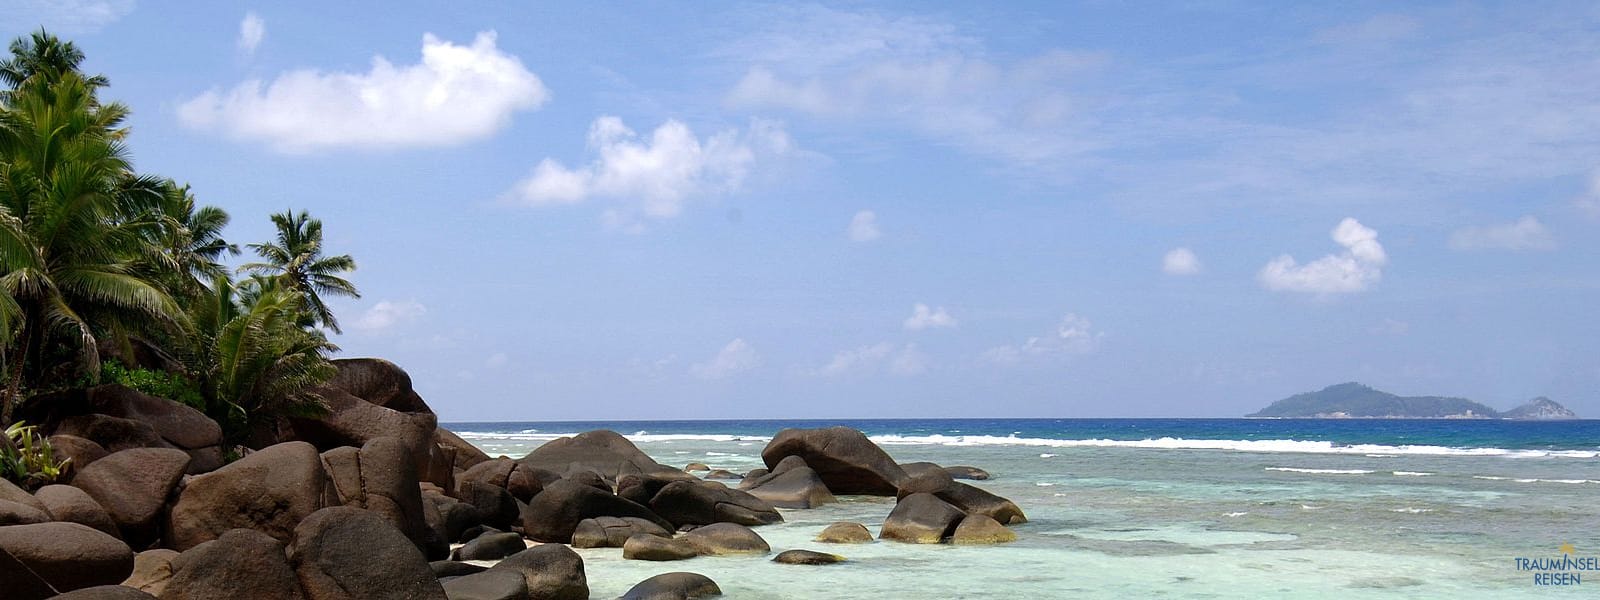 Naturschutz auf den Seychellen